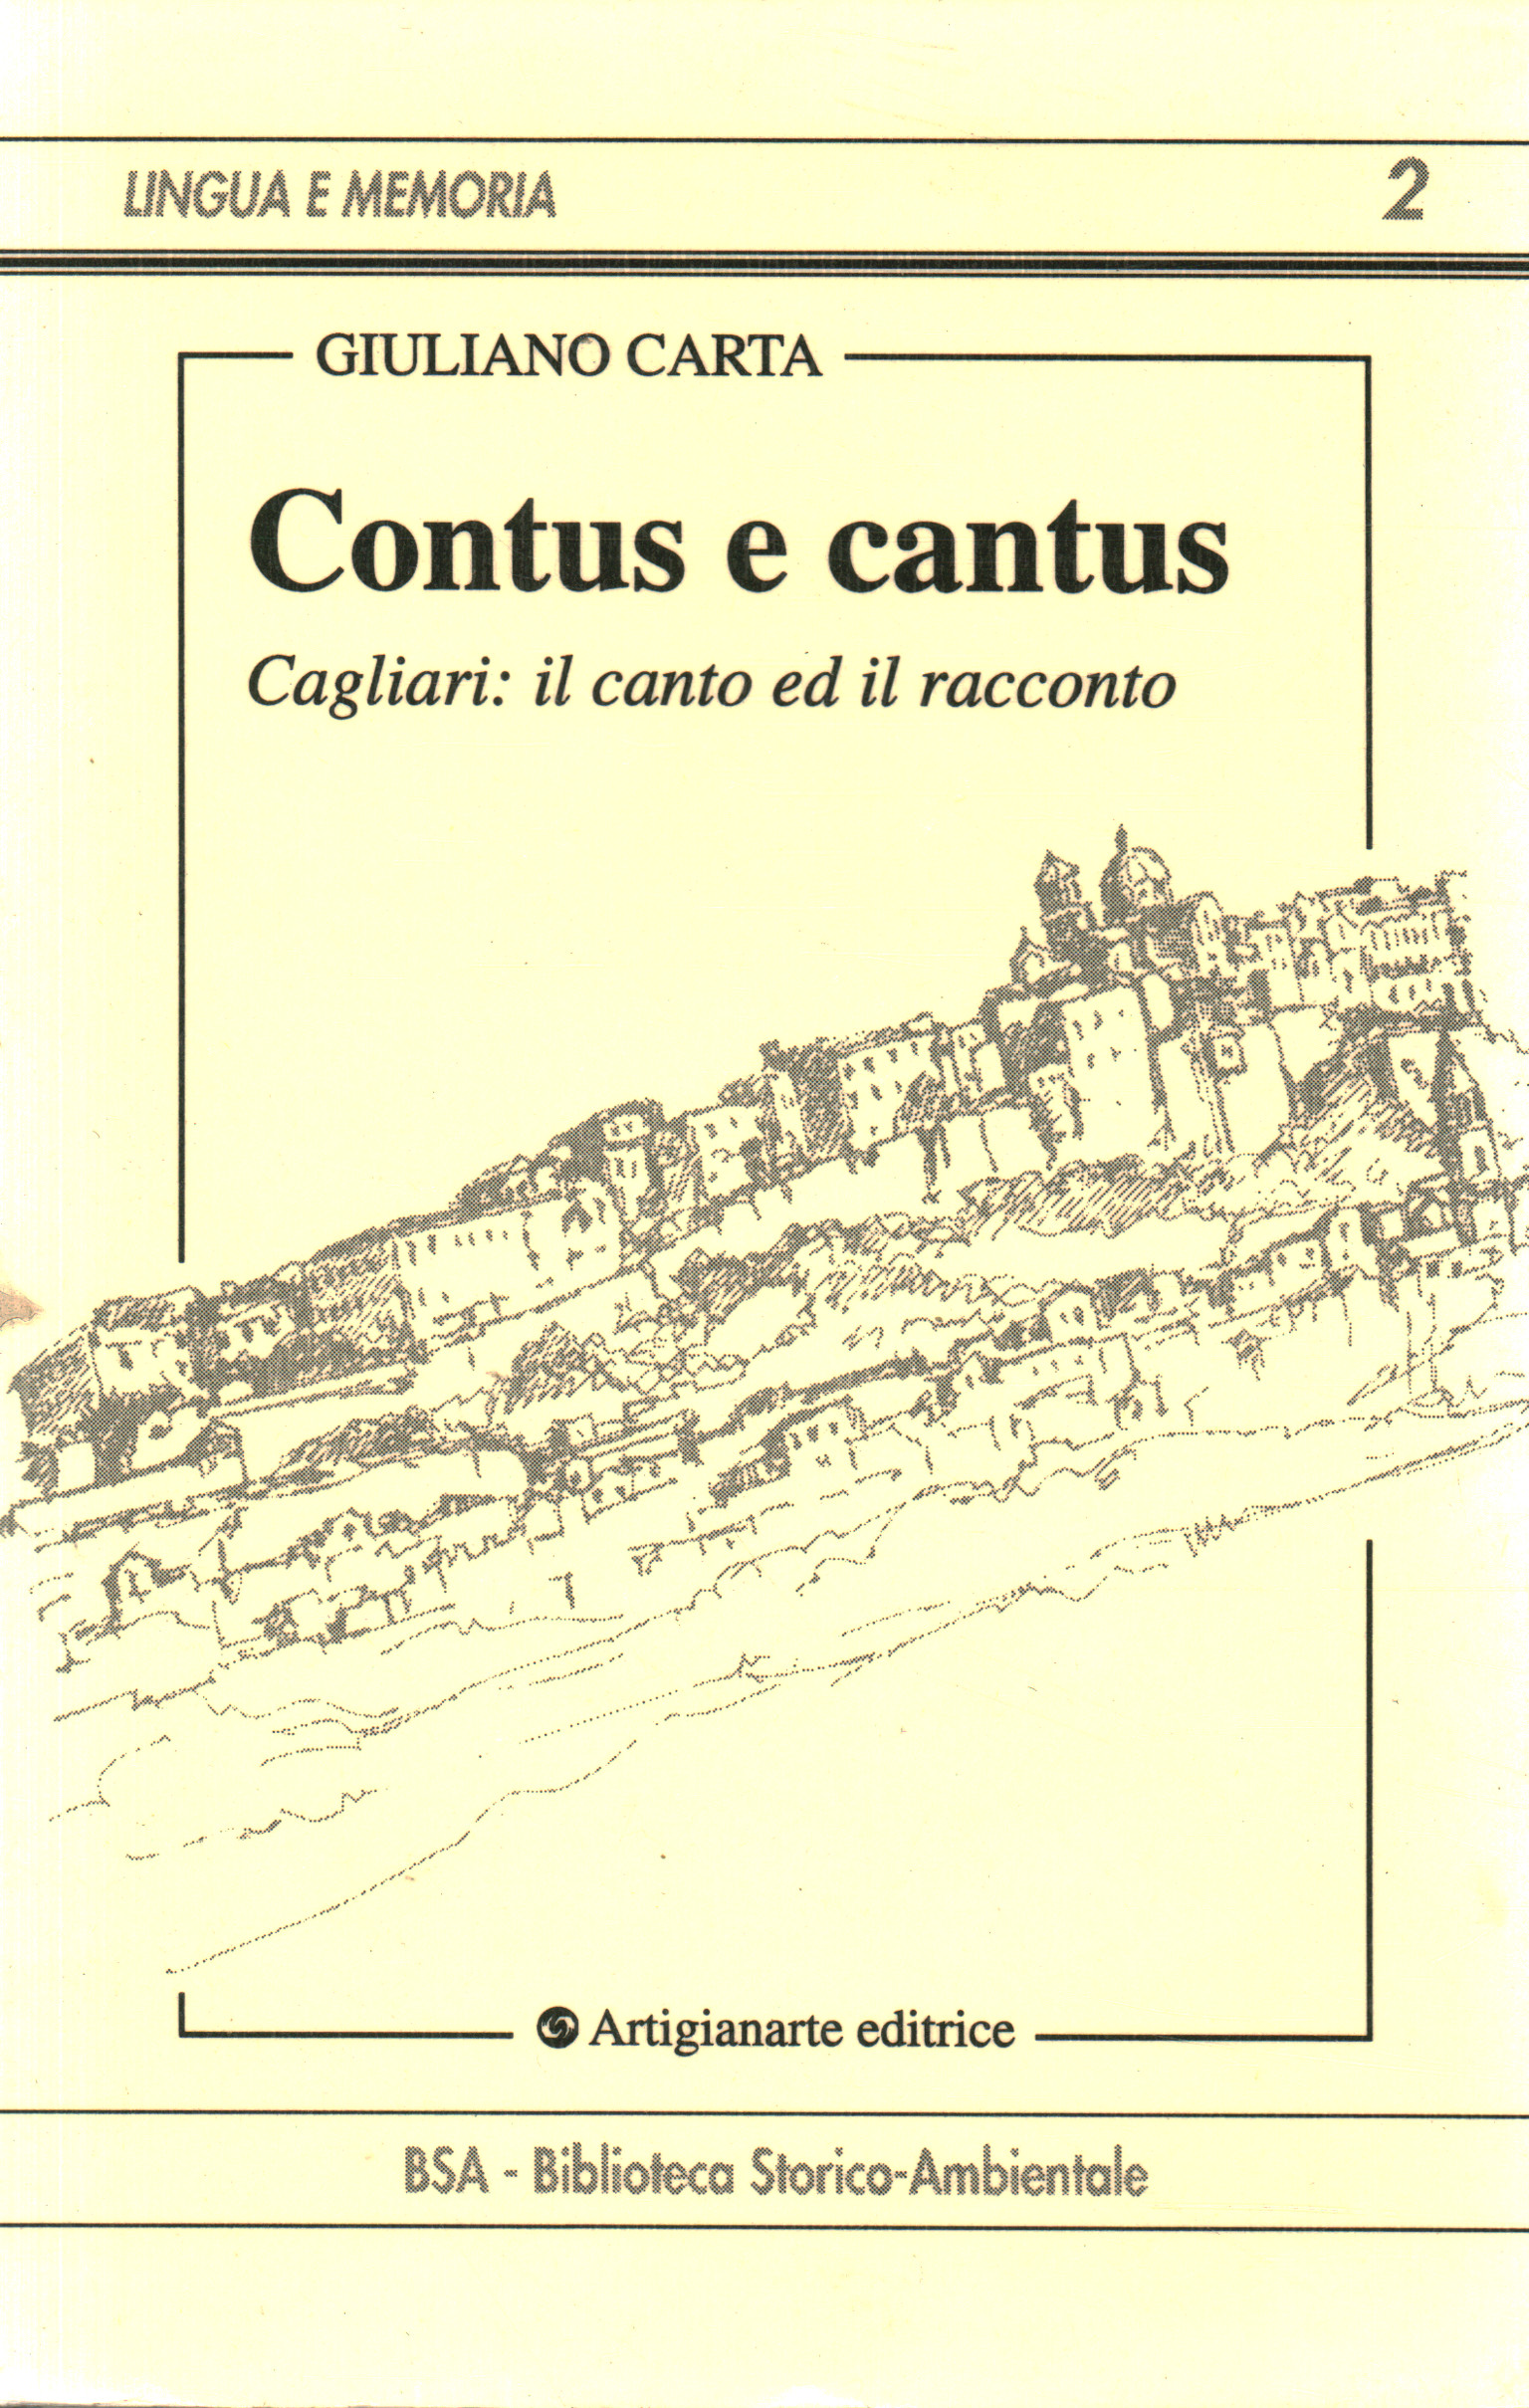 Contus e cantus, Giuliano Carta